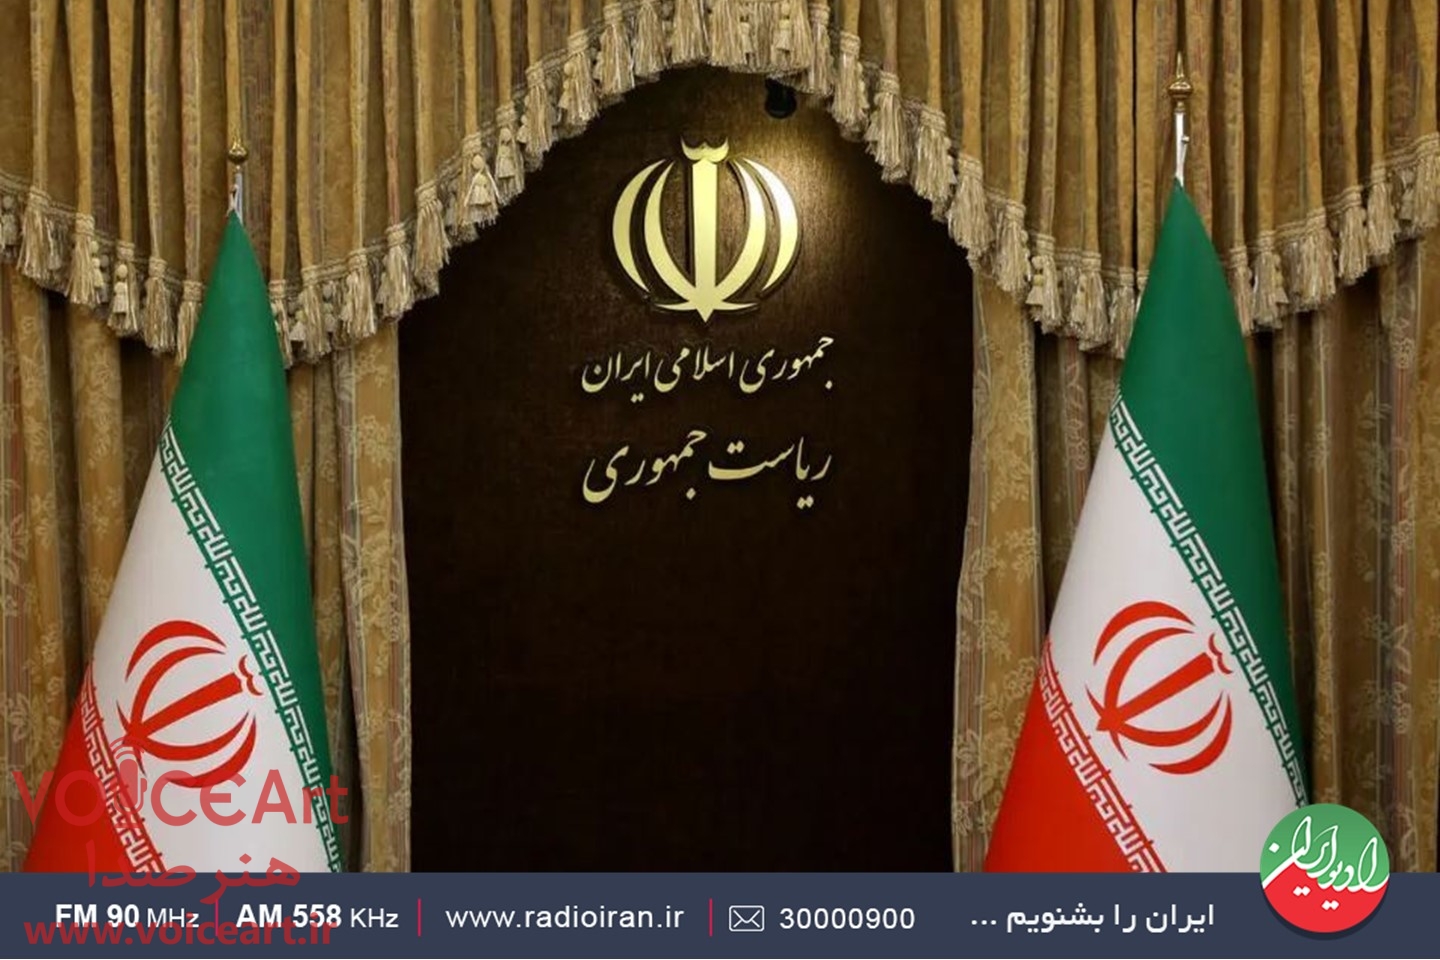 انتظارات از رییس جمهور آینده در «ایران امروز» رادیو ایران